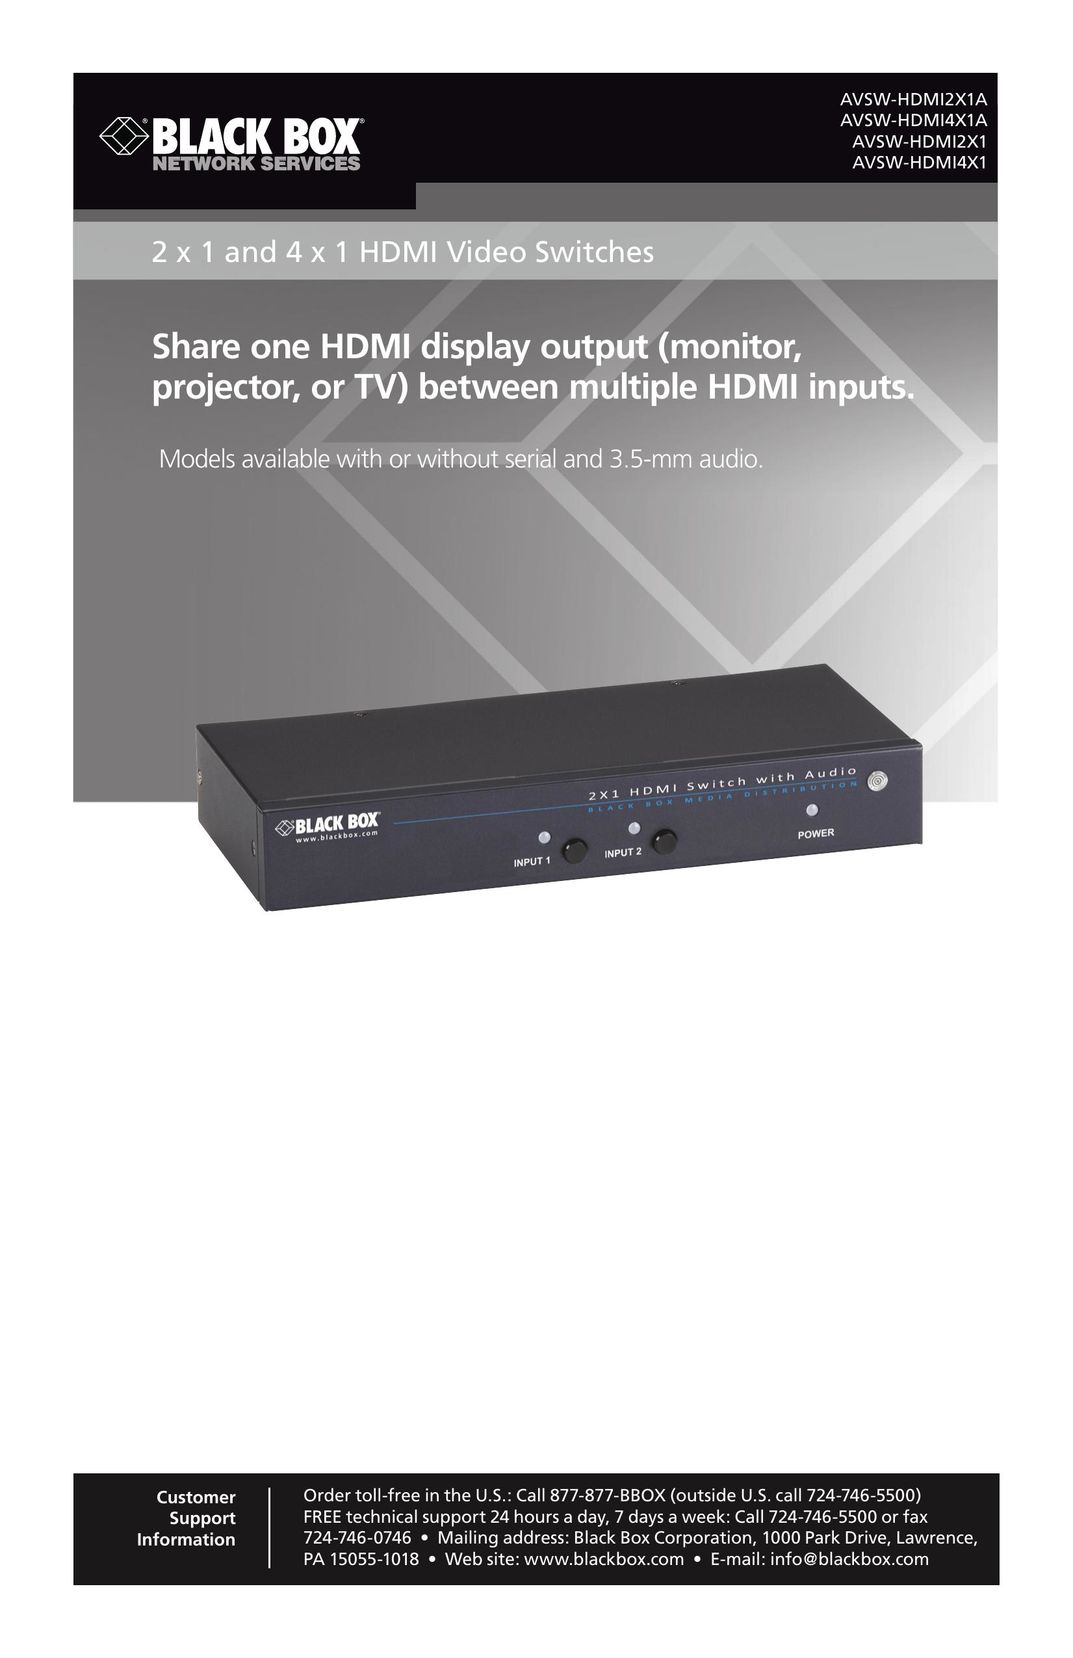 Black Box AVSW-HDMI4X1 TV Video Accessories User Manual